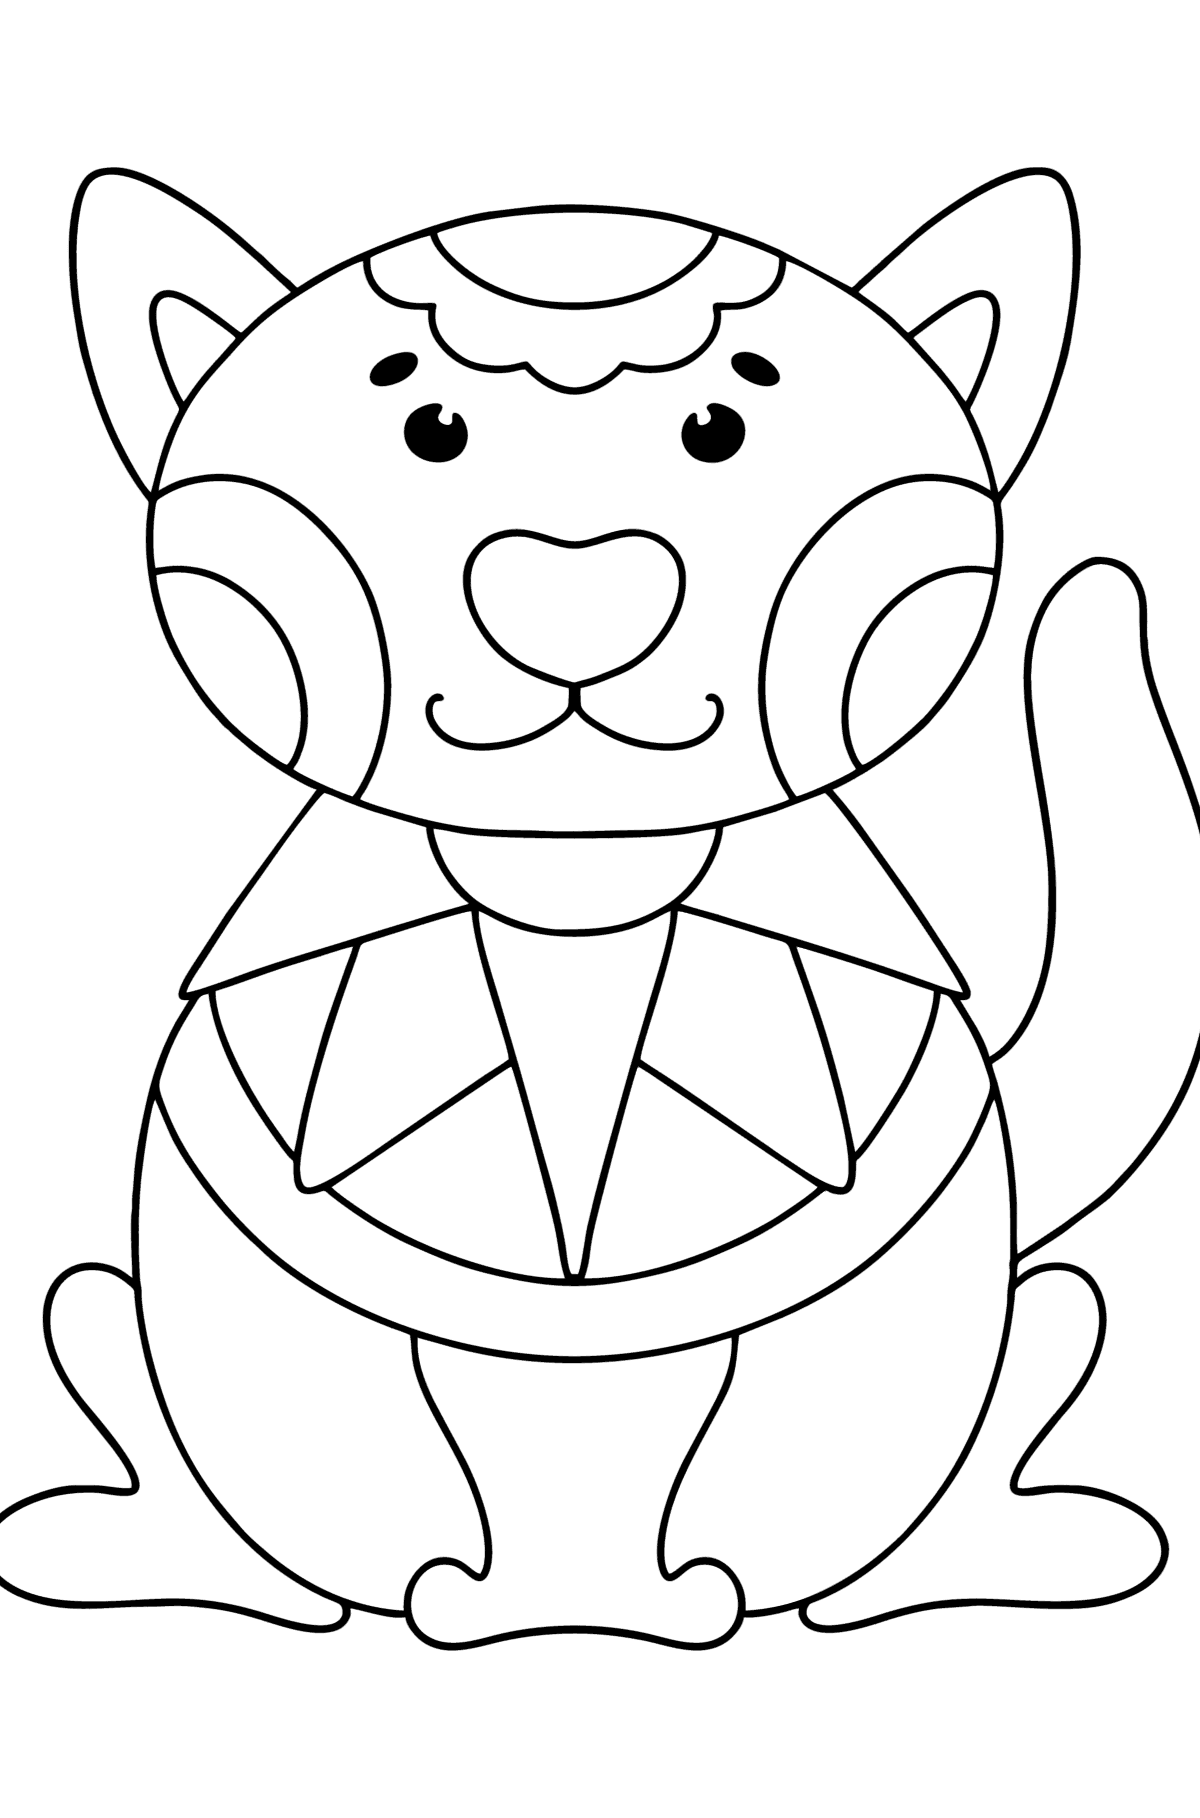 Раскраска антистресс кошка - Картинки для Детей